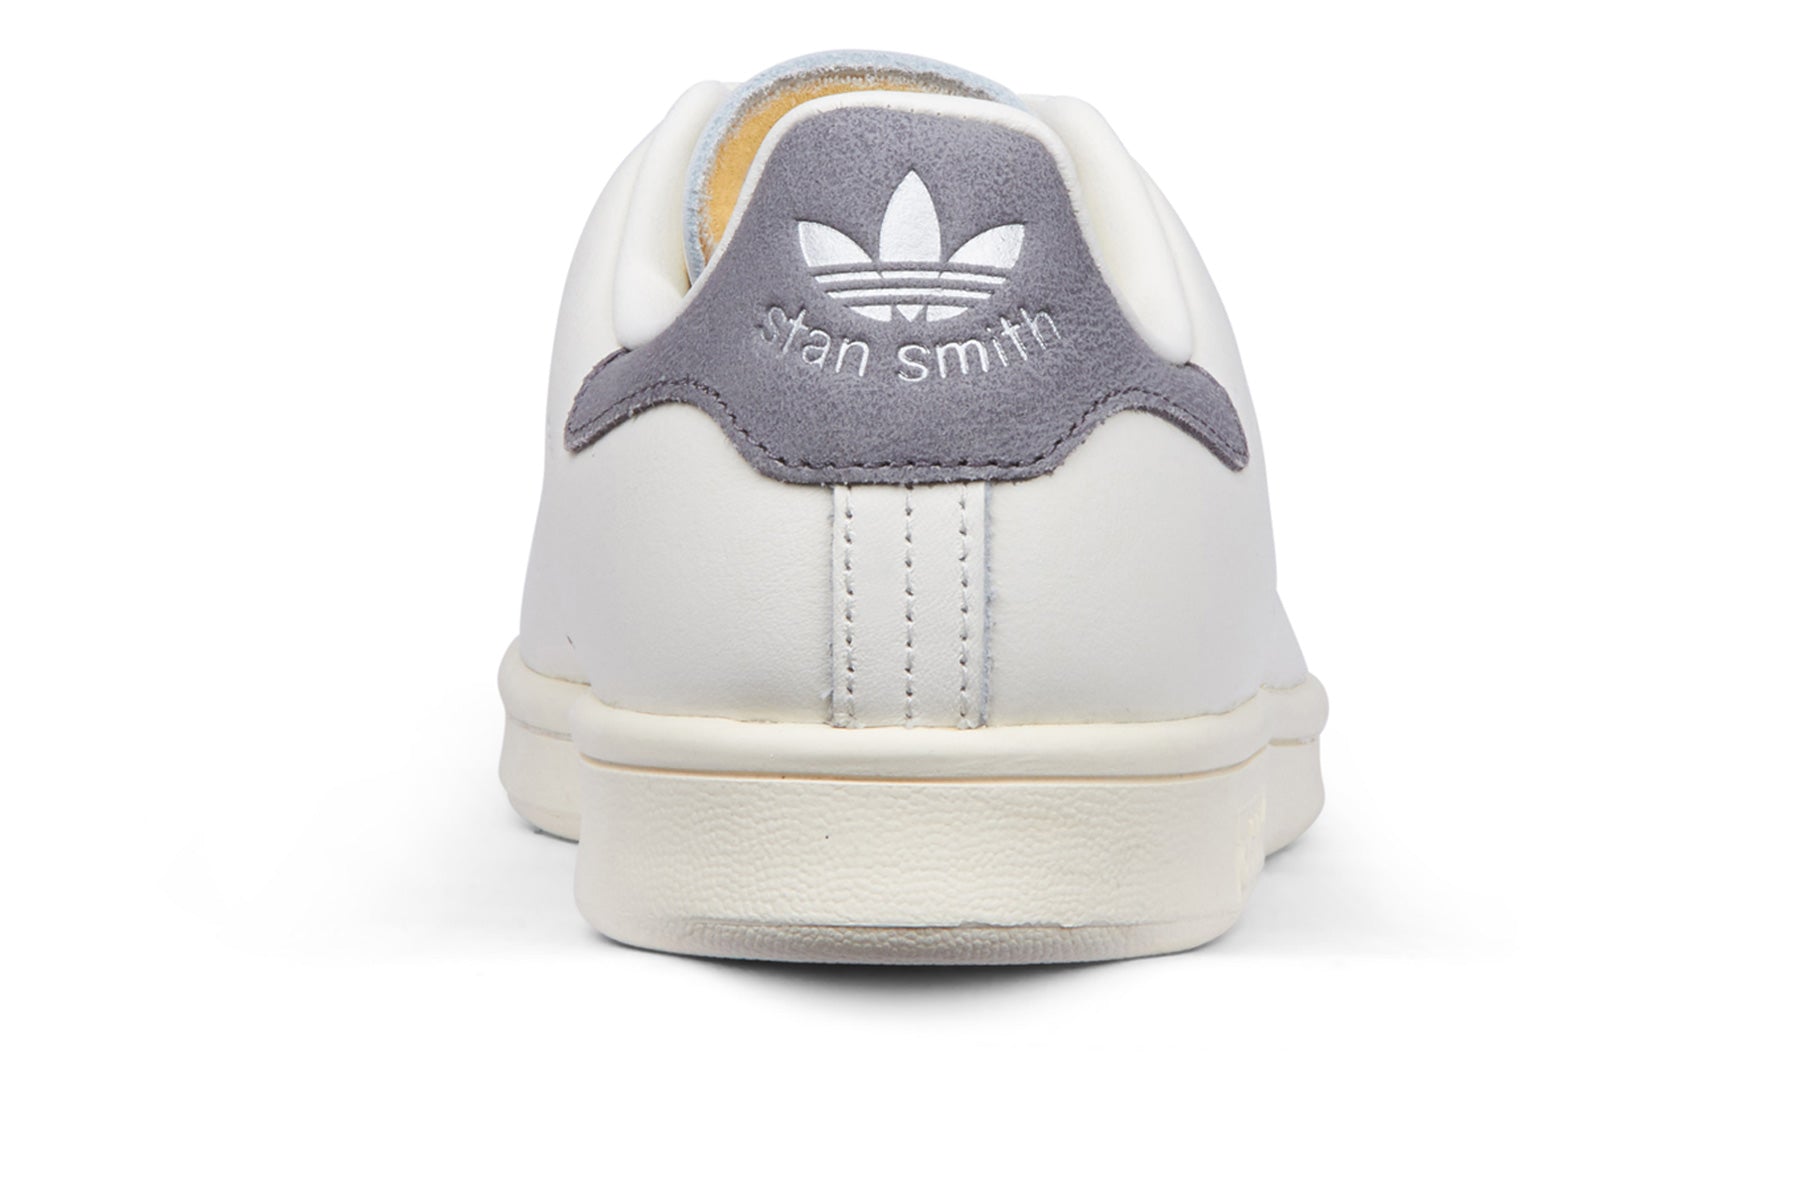 Adidas Stan Smith - Chalk White/Off White/Panton